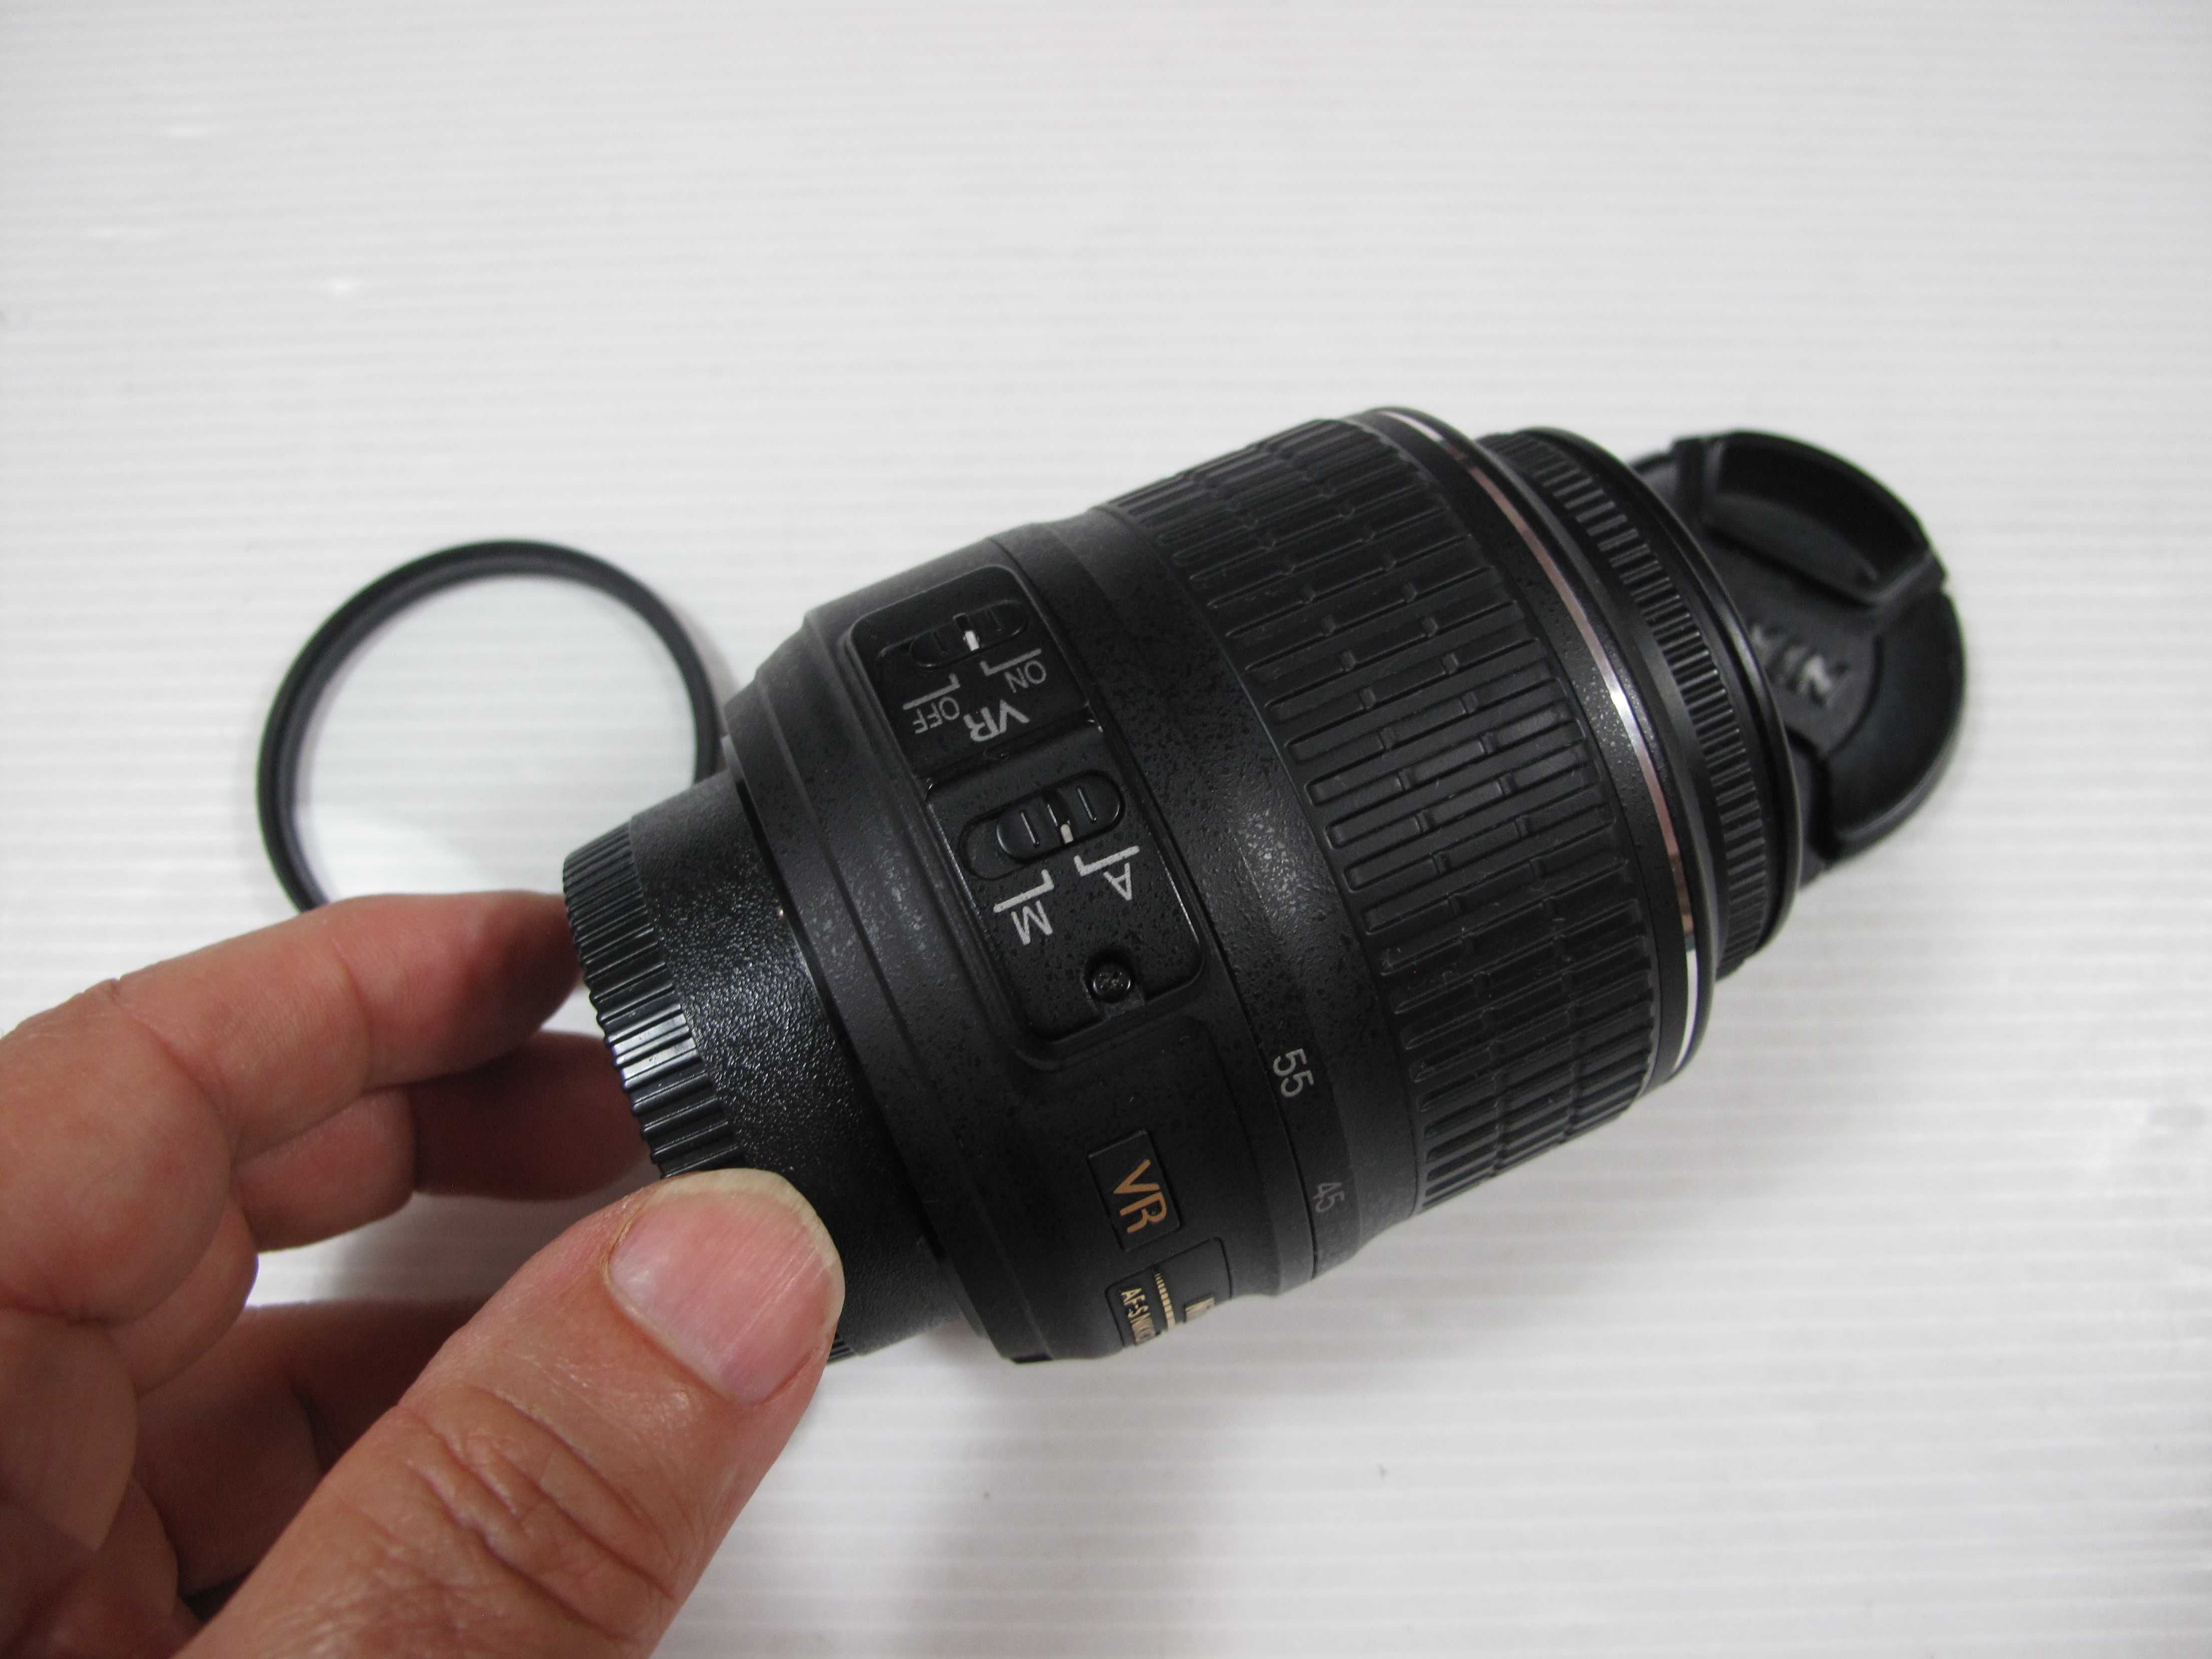 Nikon 18-55 VR estado como novo - Ver descrição